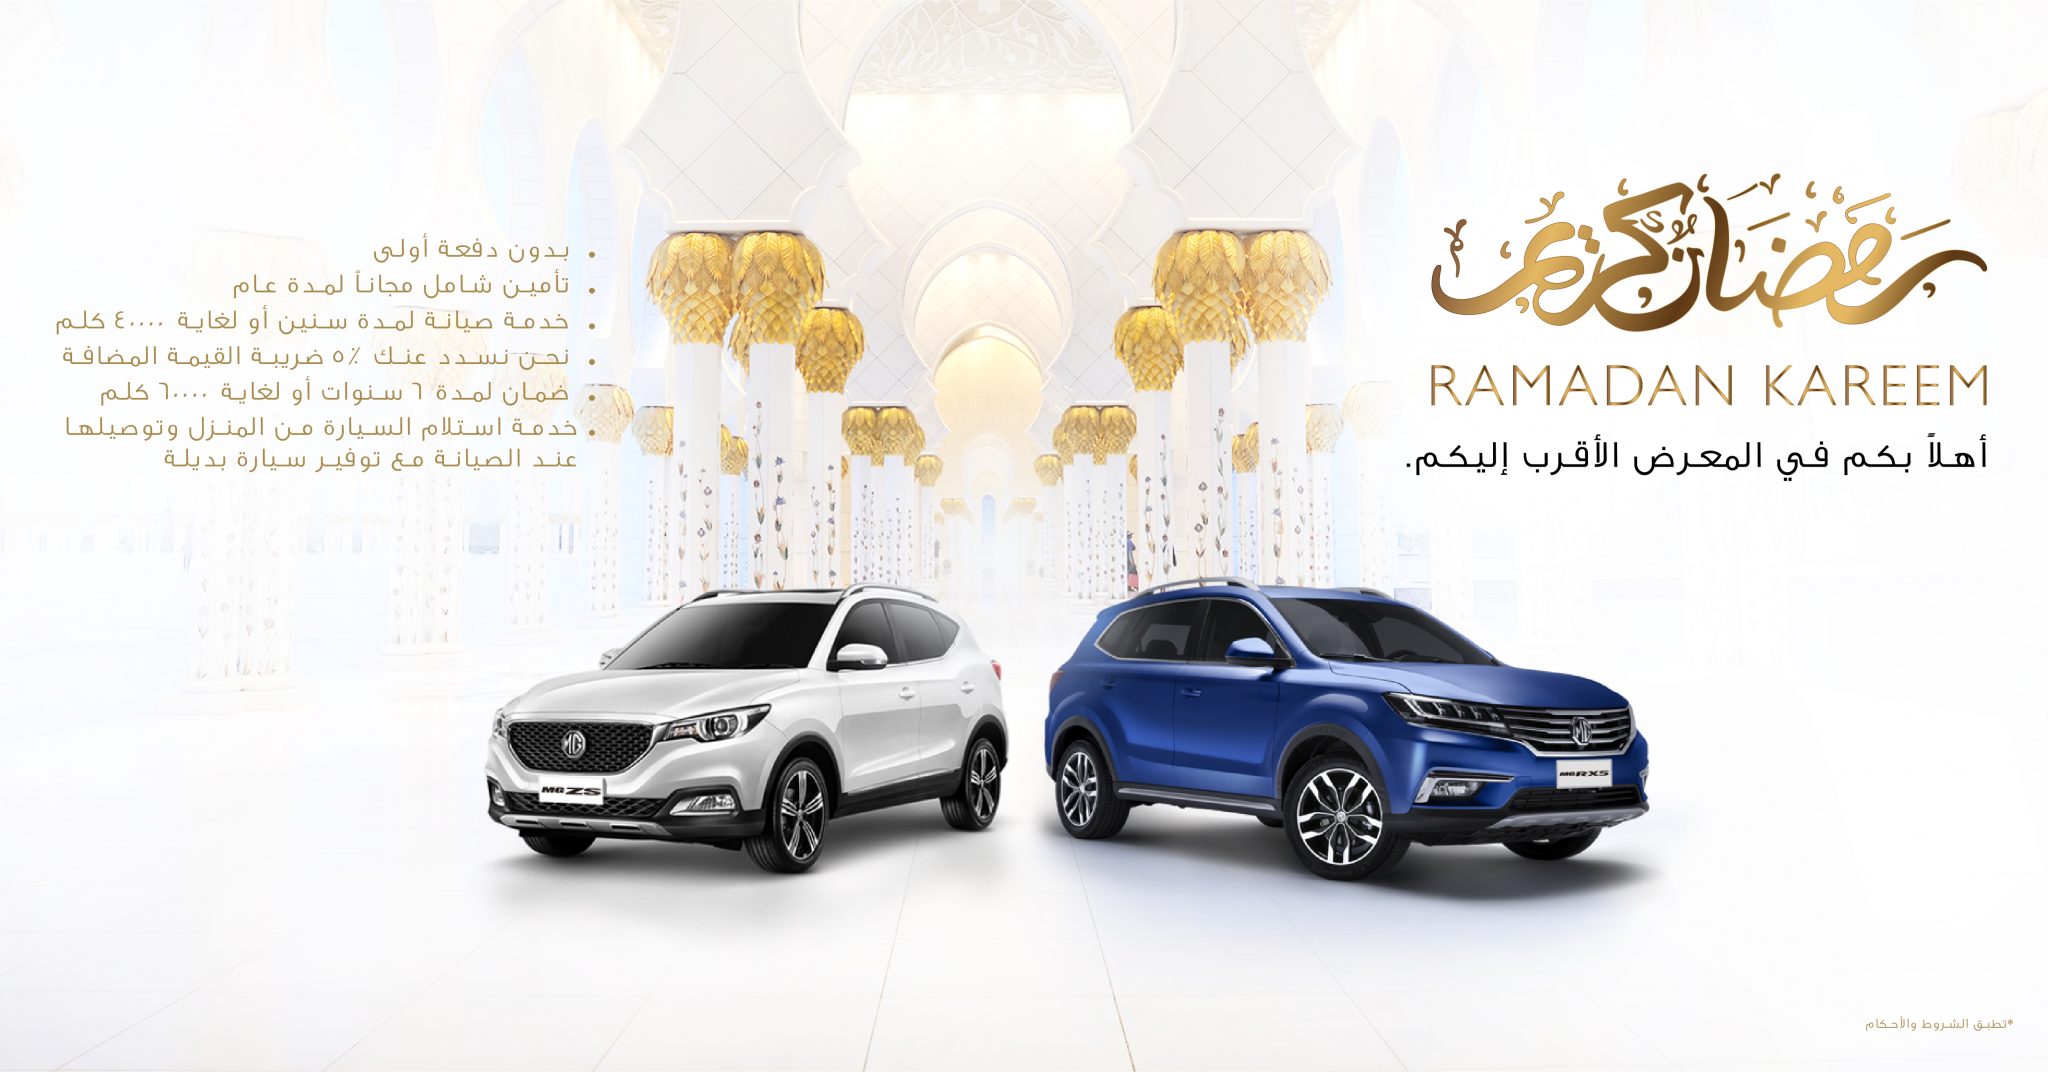 ام جي موتور تطلق عروض مميزة خلال شهر رمضان المبارك في الإمارات العربية المتحدة